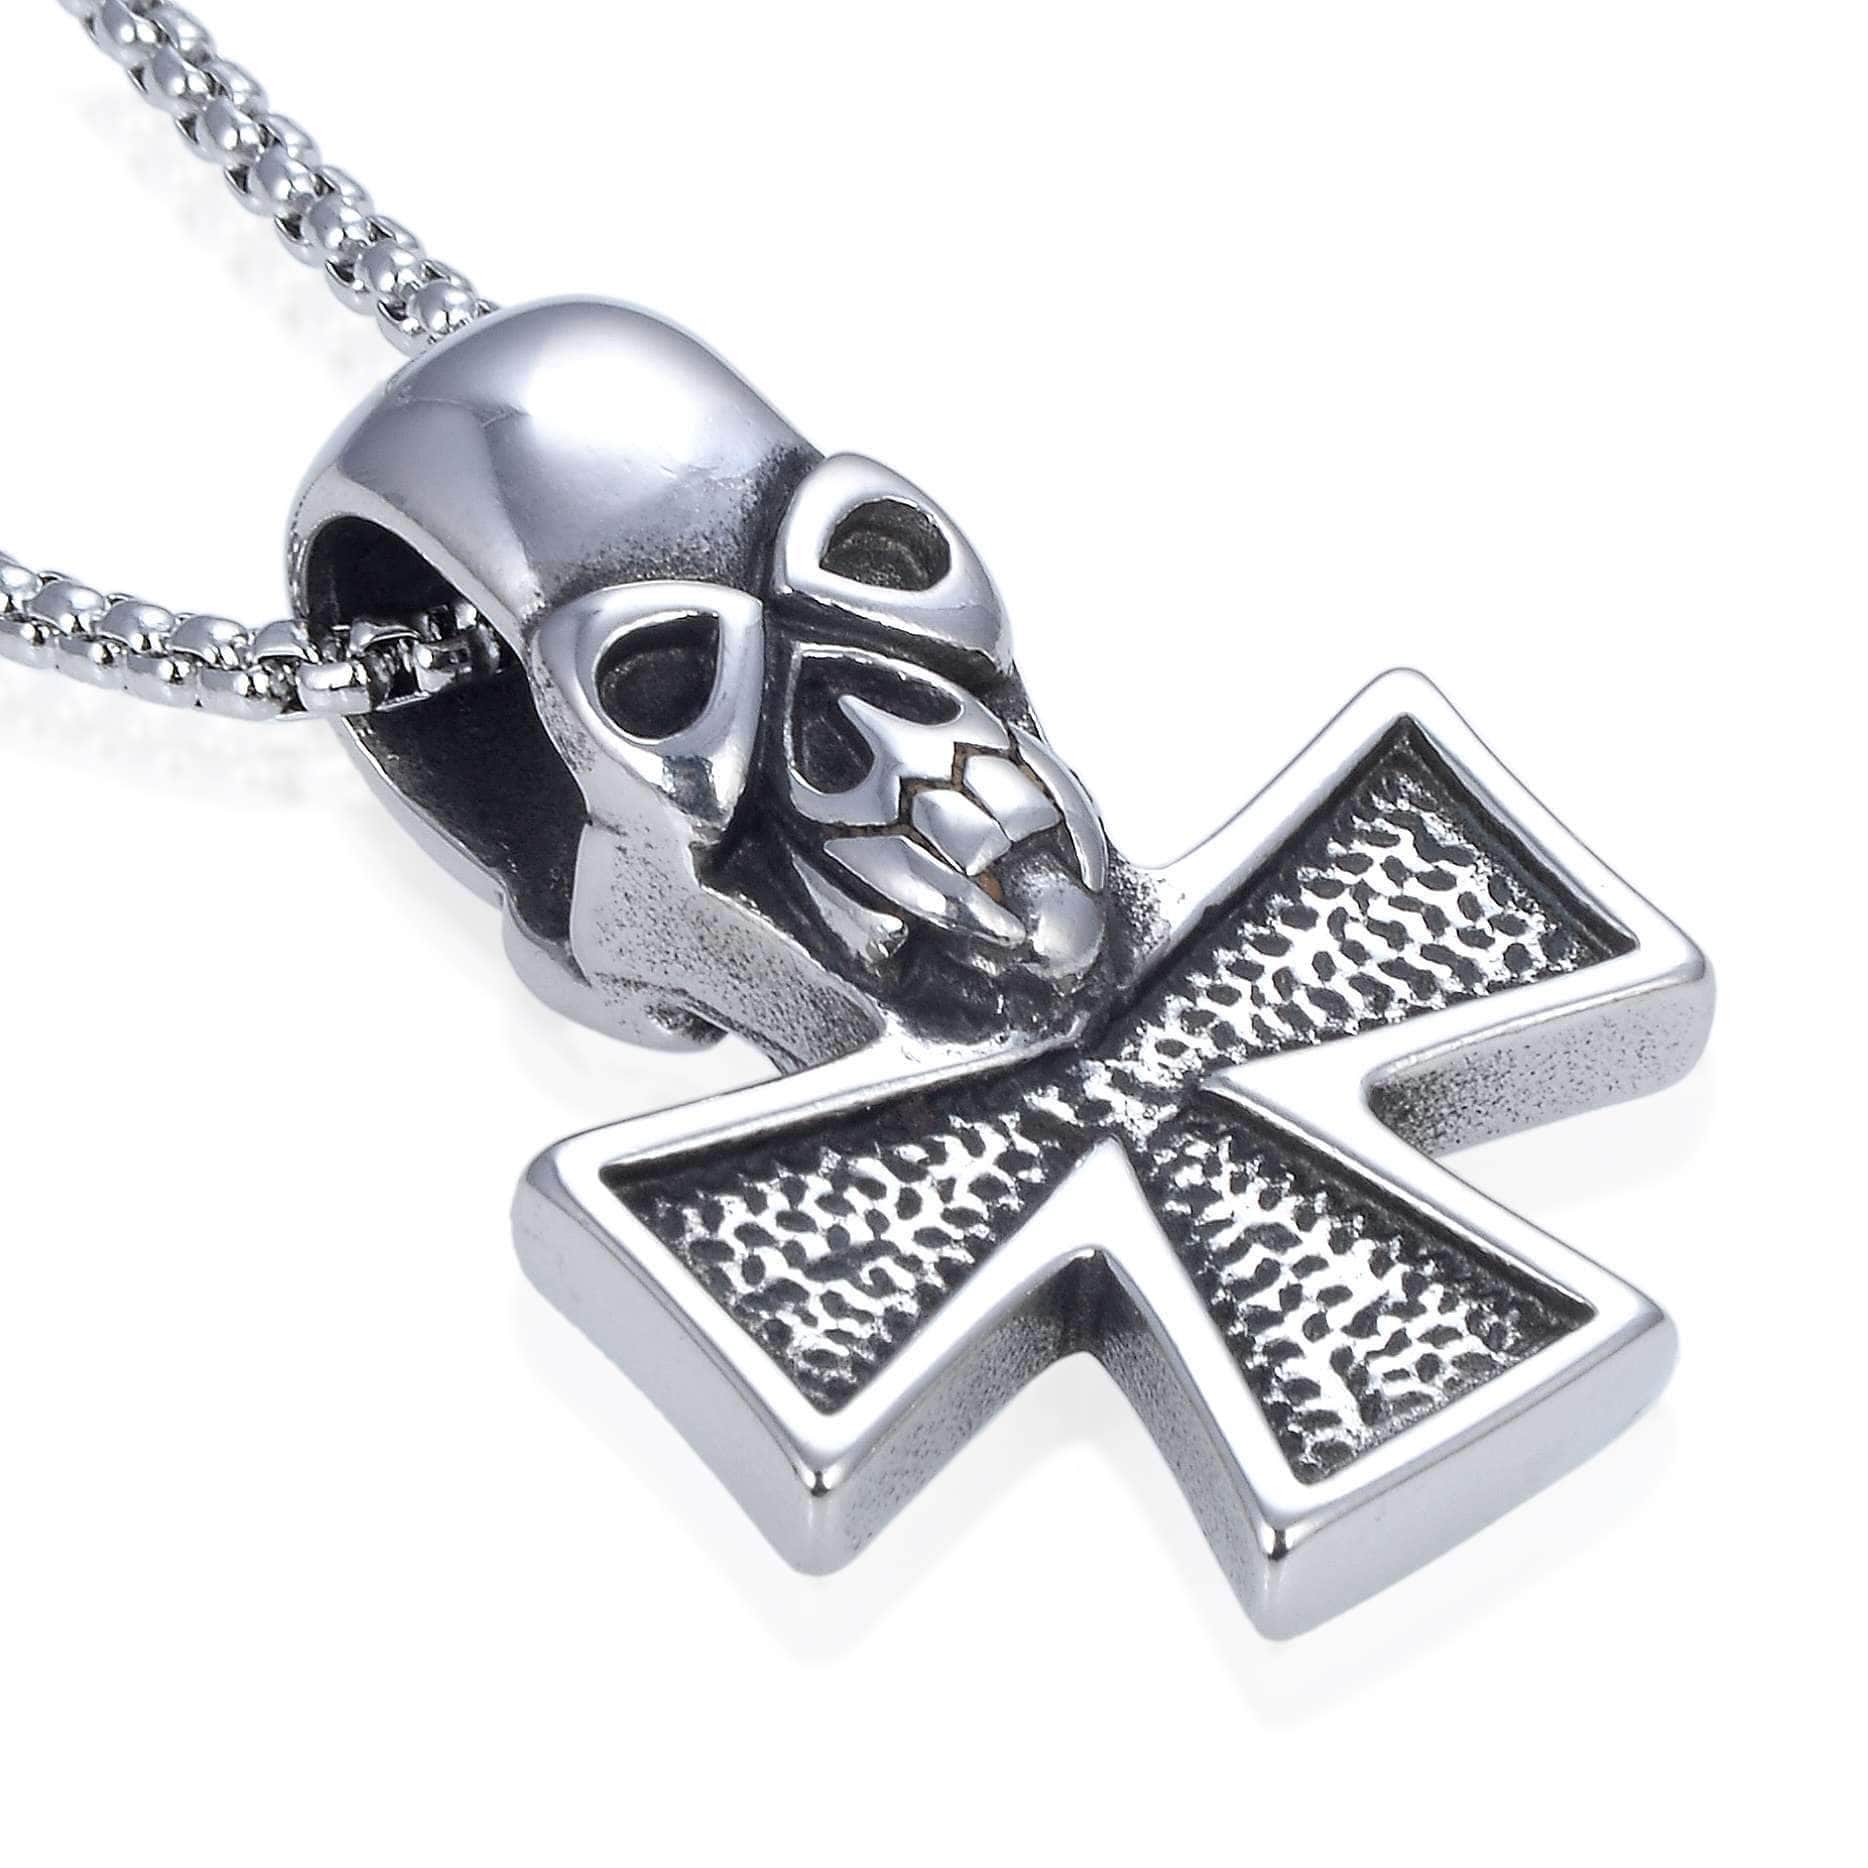 Kalifano Steel Hearts Jewelry Steel Hearts Skull & Block Cross Necklace SHN120-100